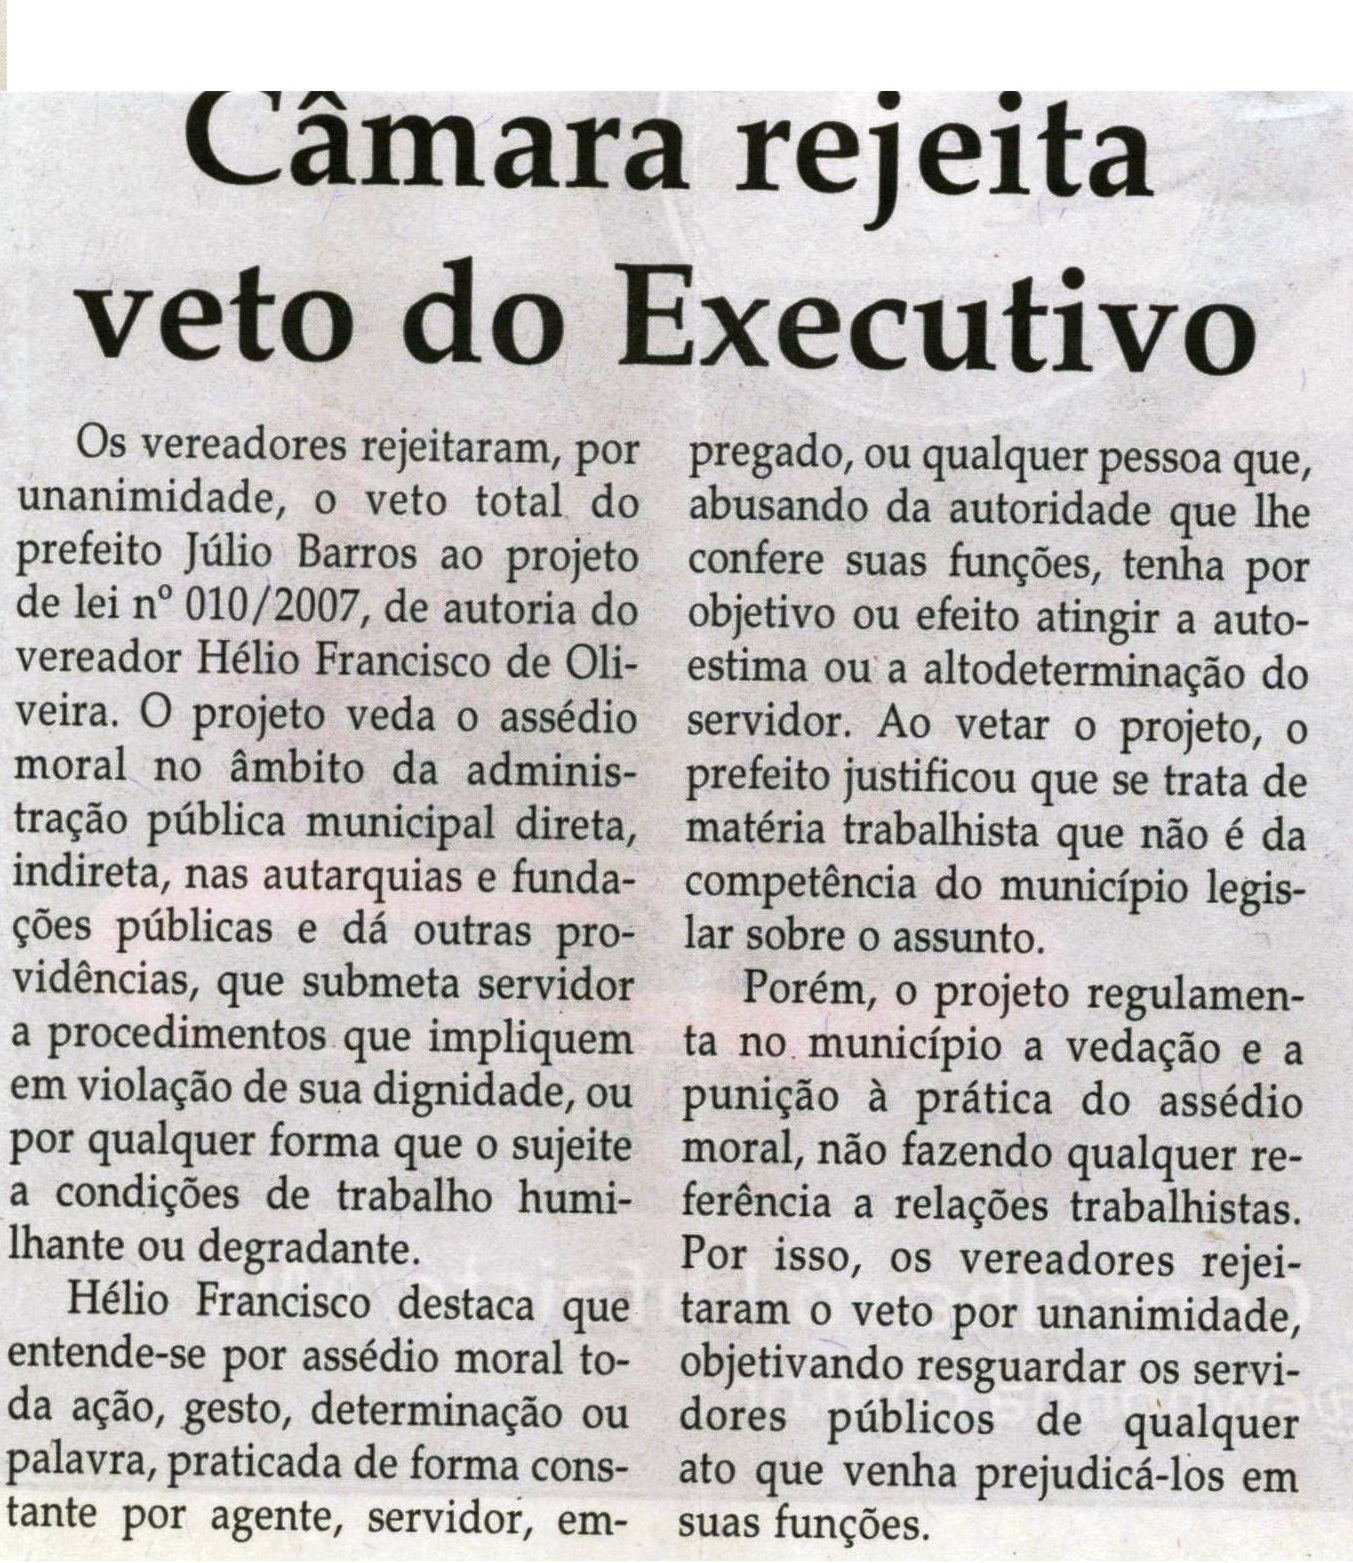 Câmara rejeita veto do executivo. Jornal Correio da Cidade,  Conselheiro Lafaiete, 24 mai. 2008, p. 04.